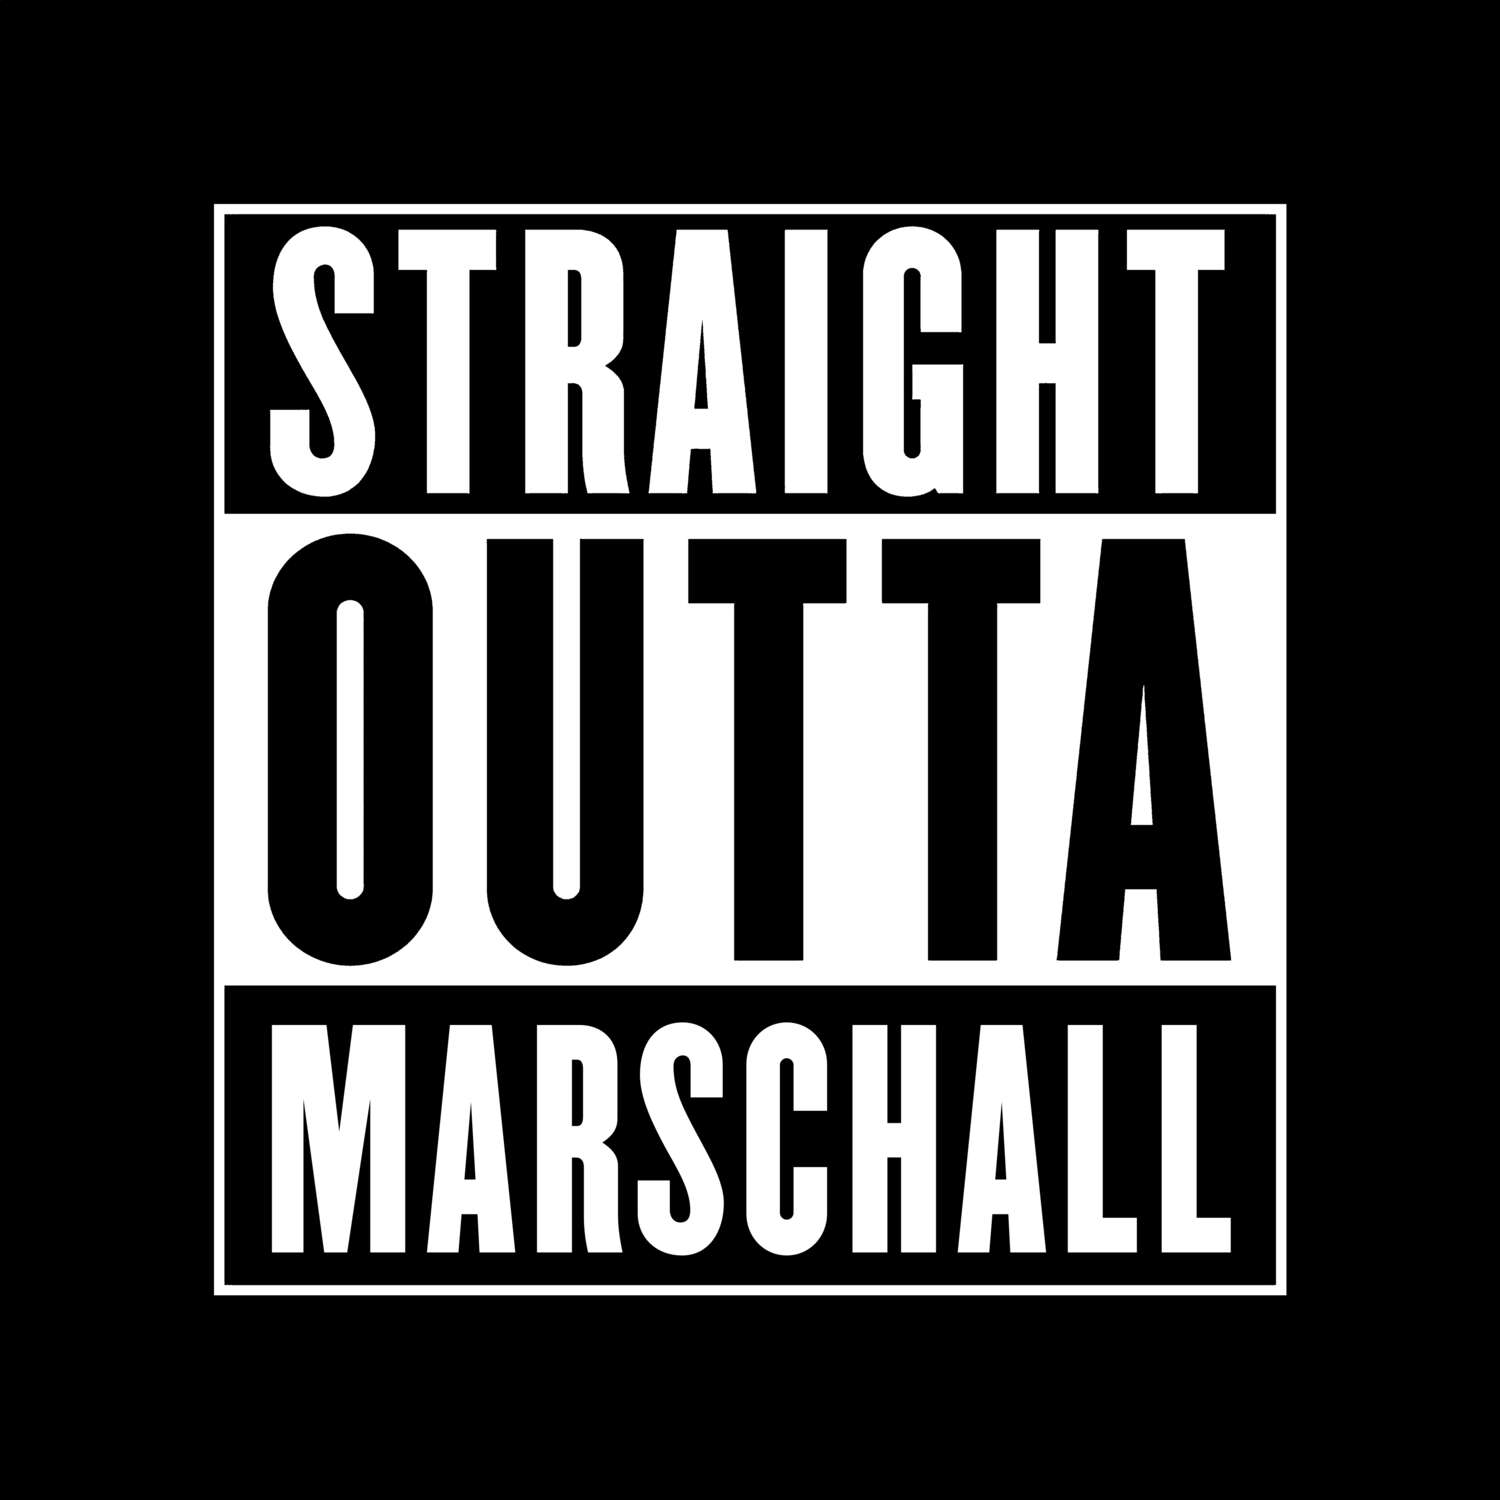 Marschall T-Shirt »Straight Outta«